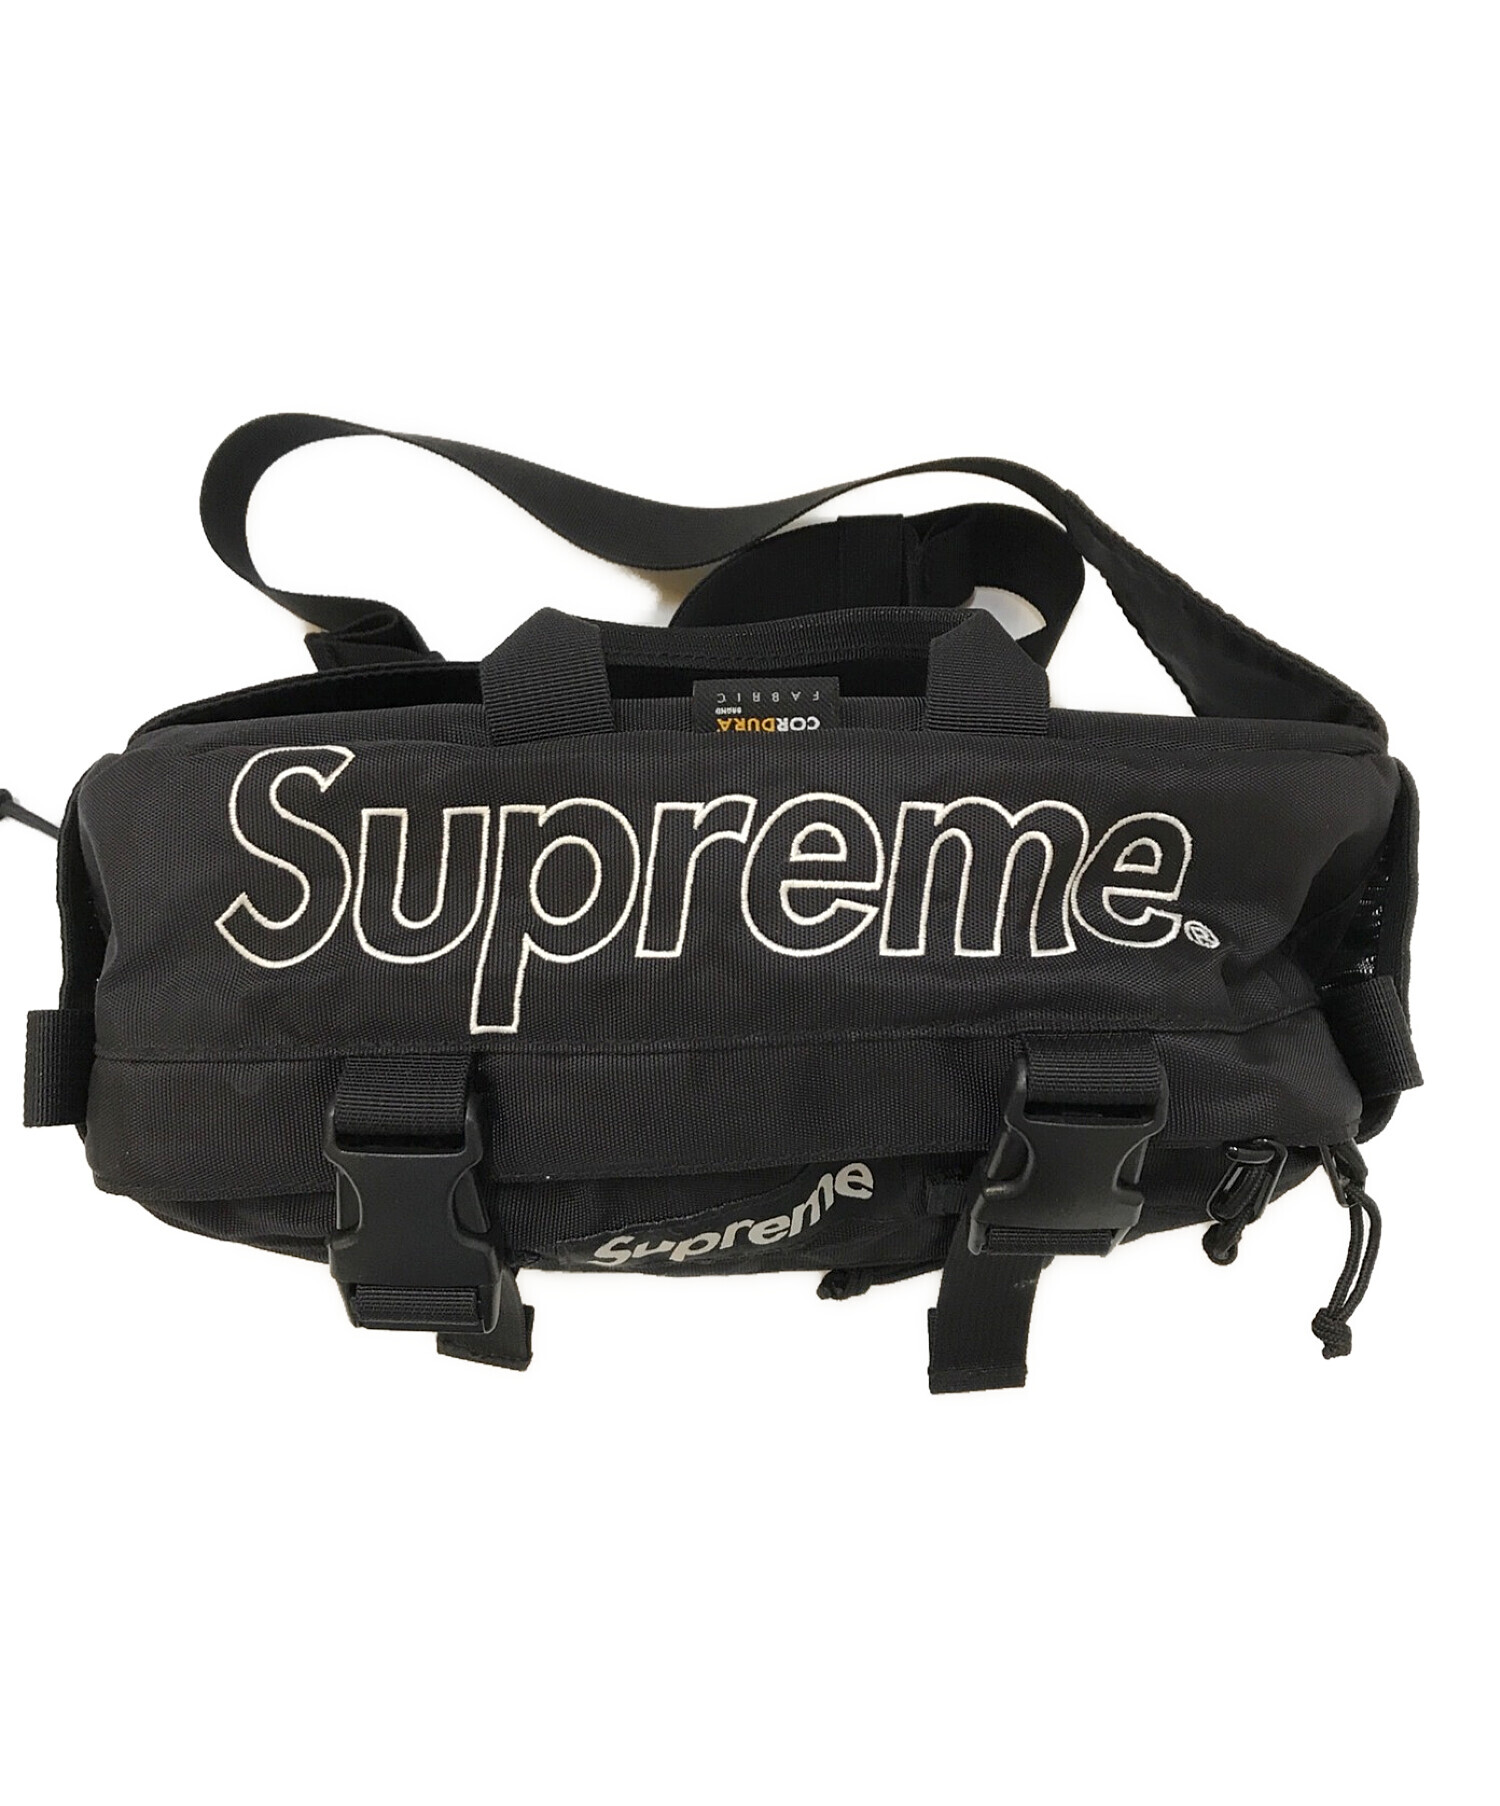 Supreme 19fw waist bag Black ウエストバッグバッグ